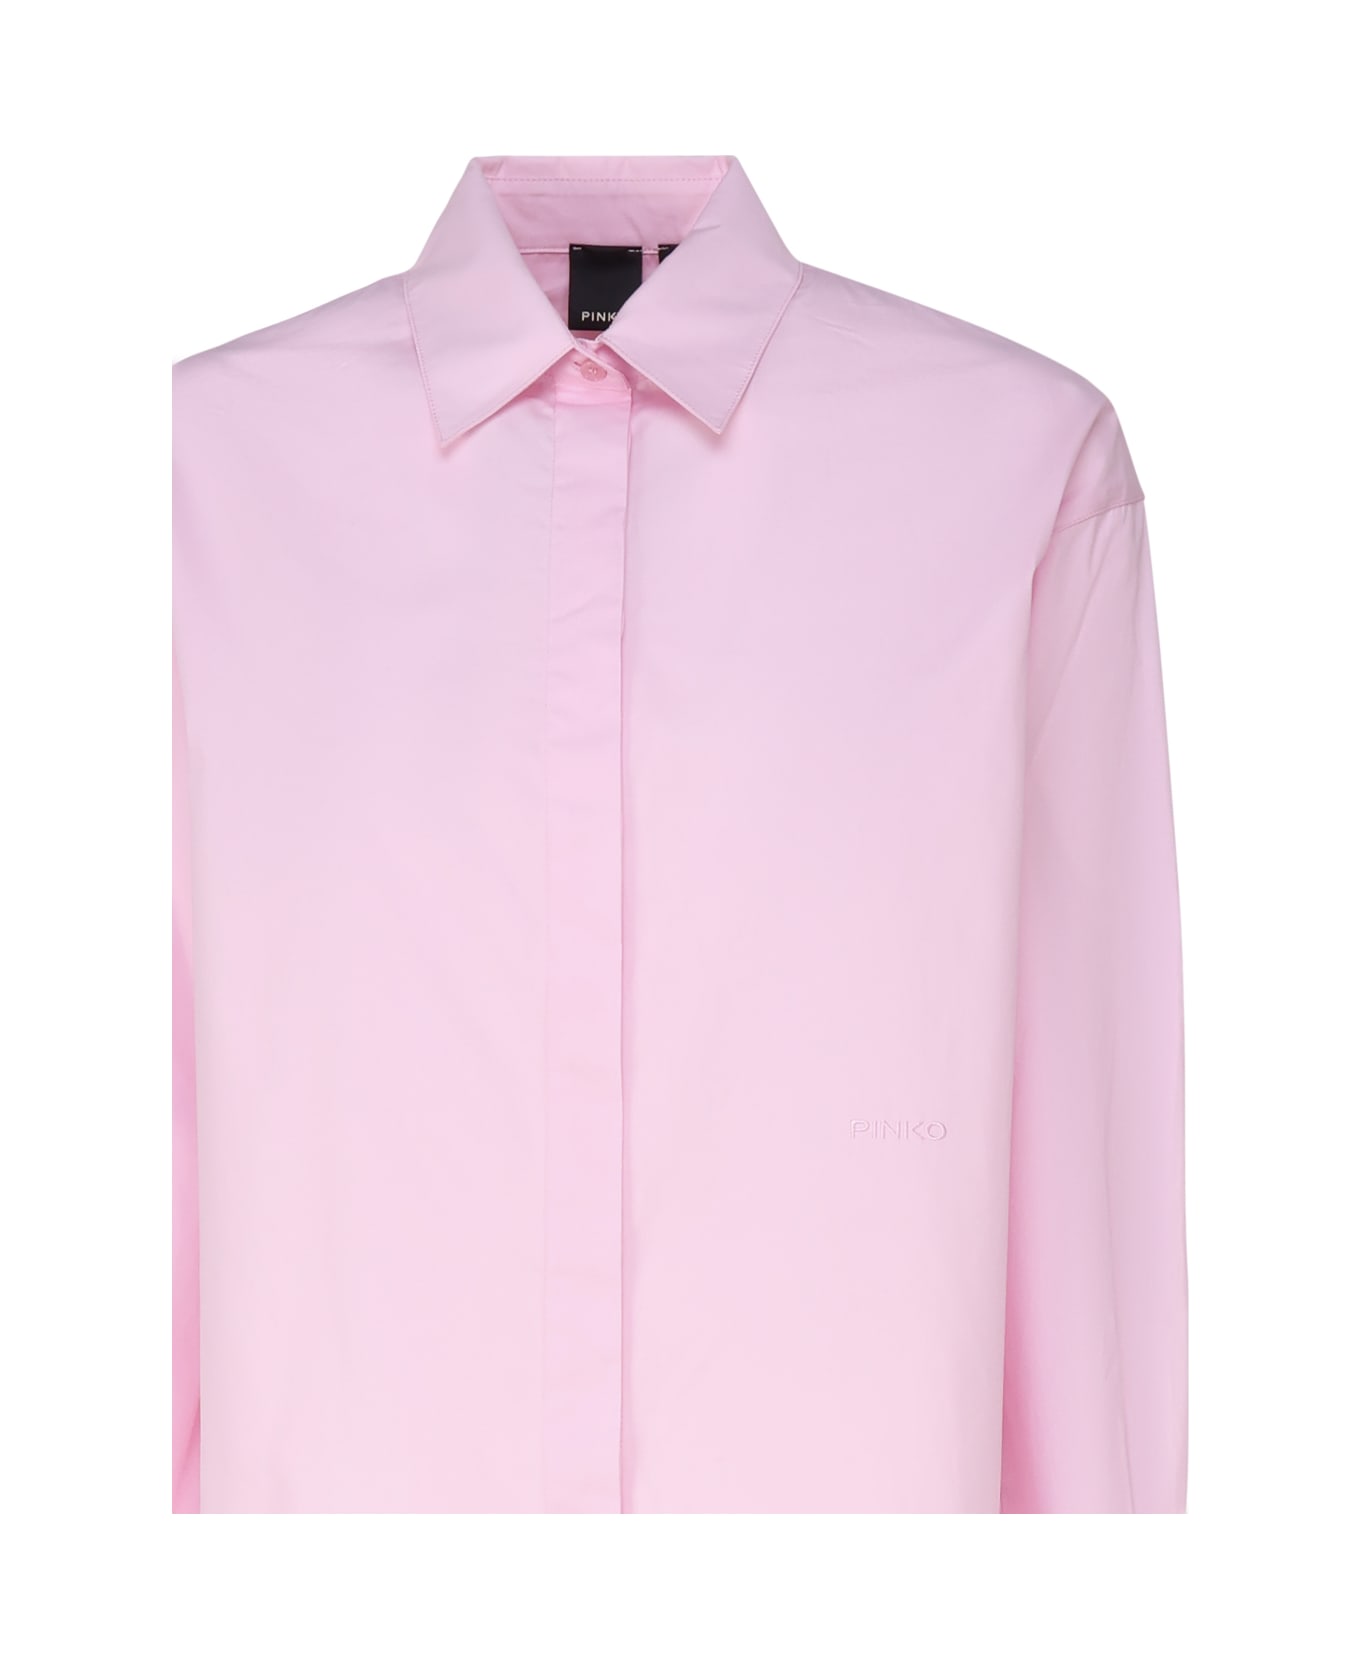 Pinko Long-sleeved Collared Shirt - Pink